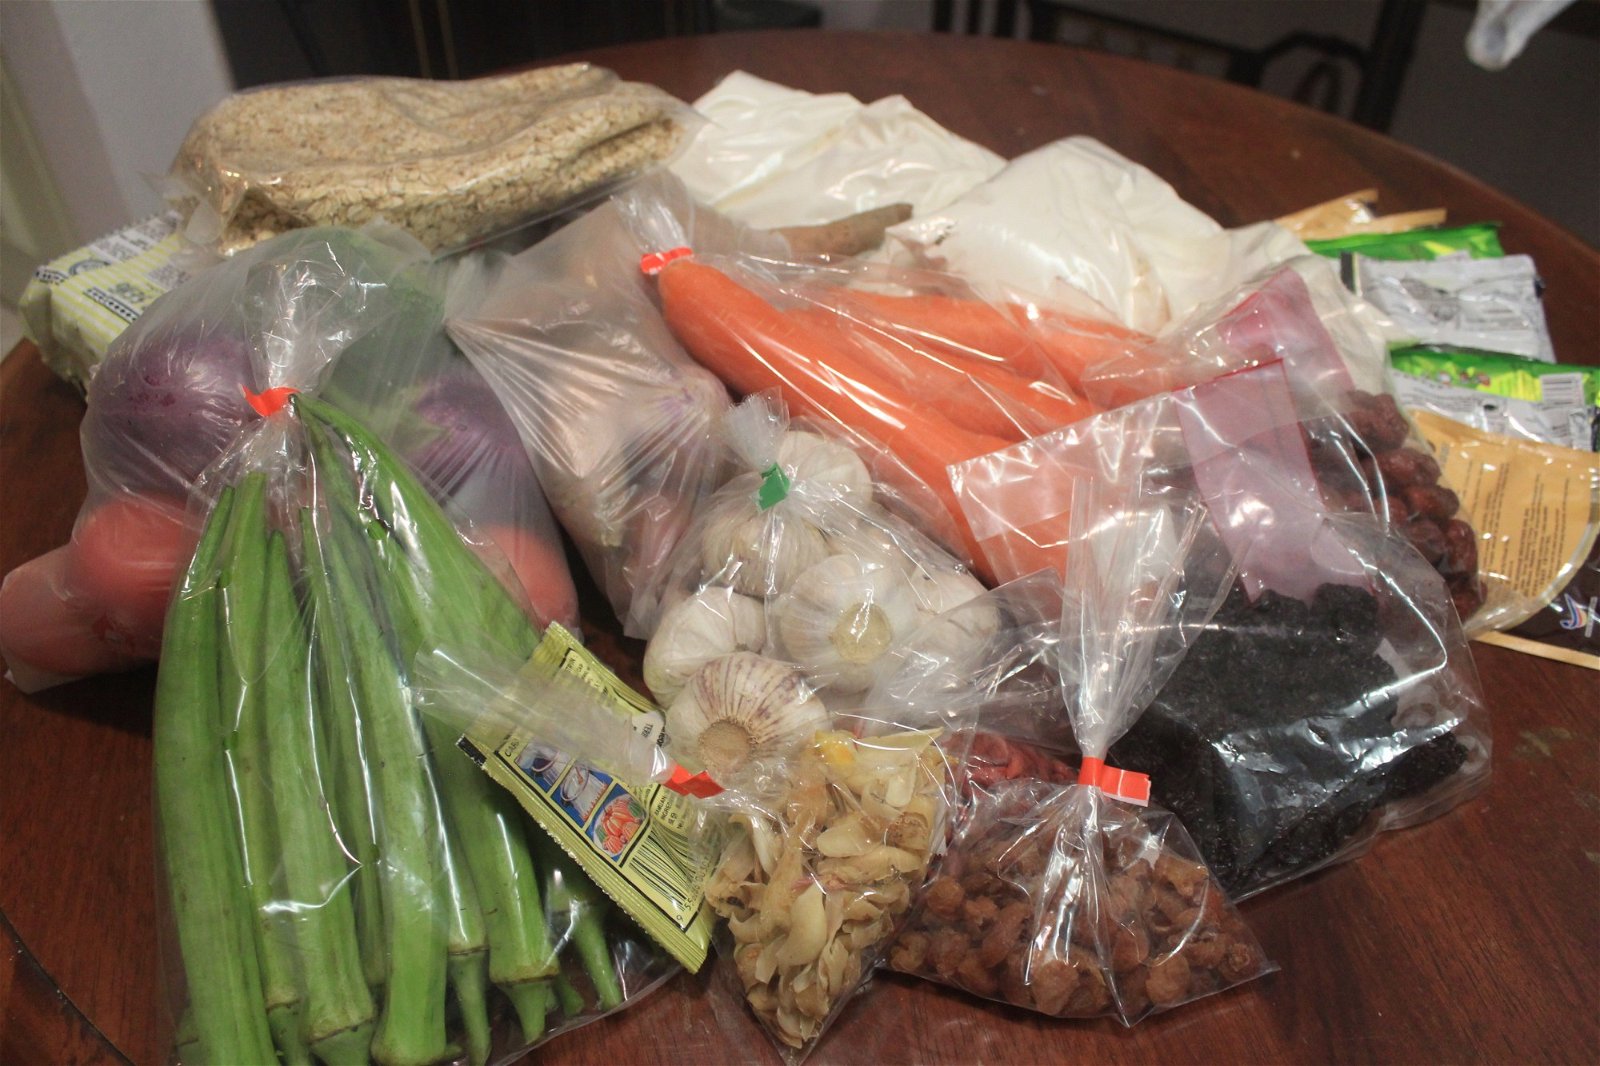 有时只是前往超市一趟购买蔬菜、饼干、麦片、面粉等日常用品，就轻易拿了超过10个塑料袋。